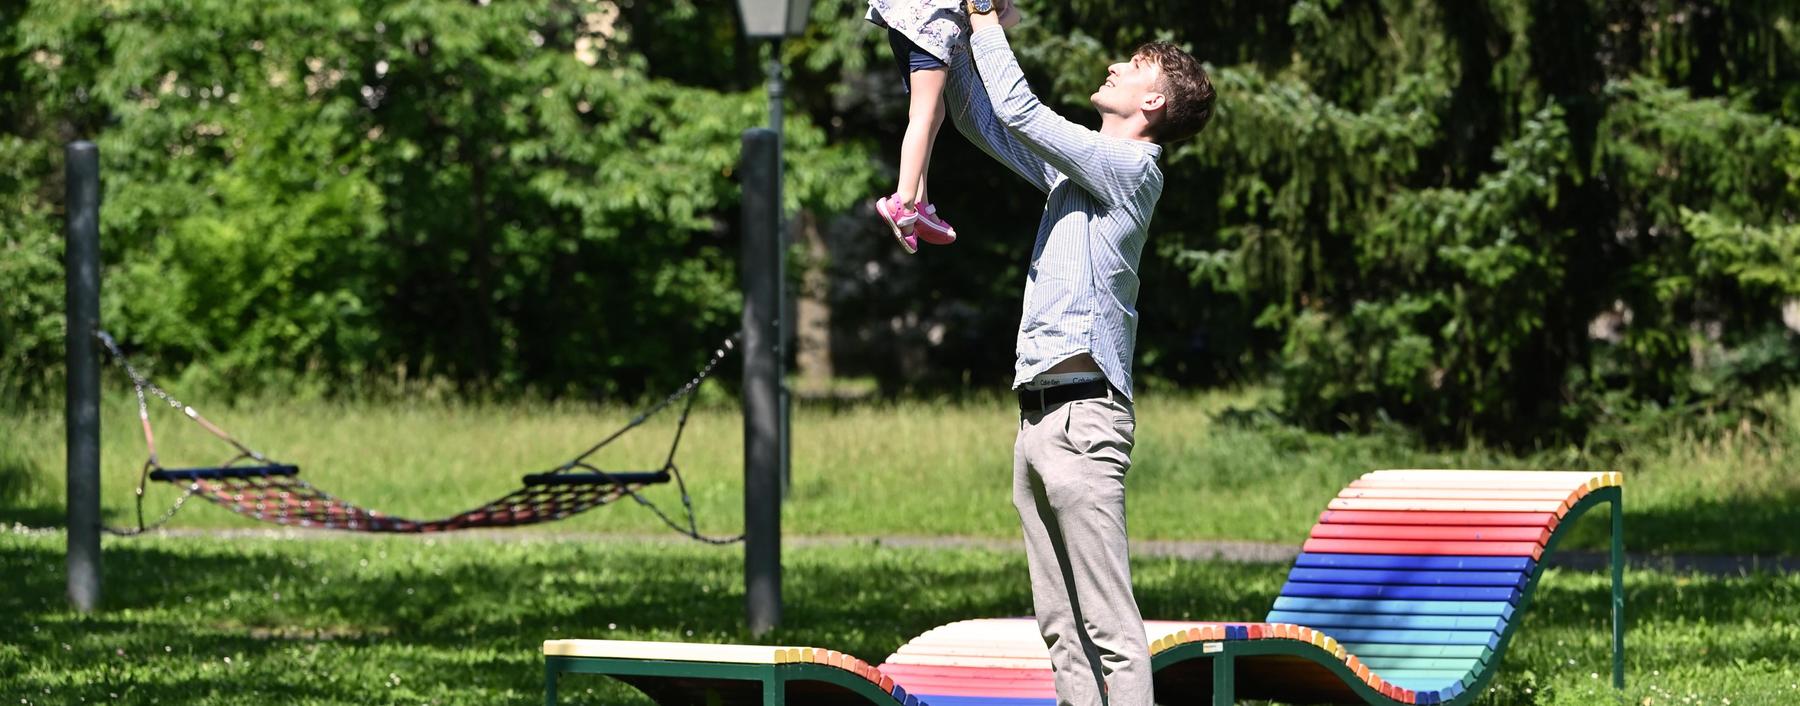 Mit 22 Jahren, frisch aus dem Bundesheer und mitten im Studium, bekam Florian Leitgeber die Nachricht, er werde Vater. 